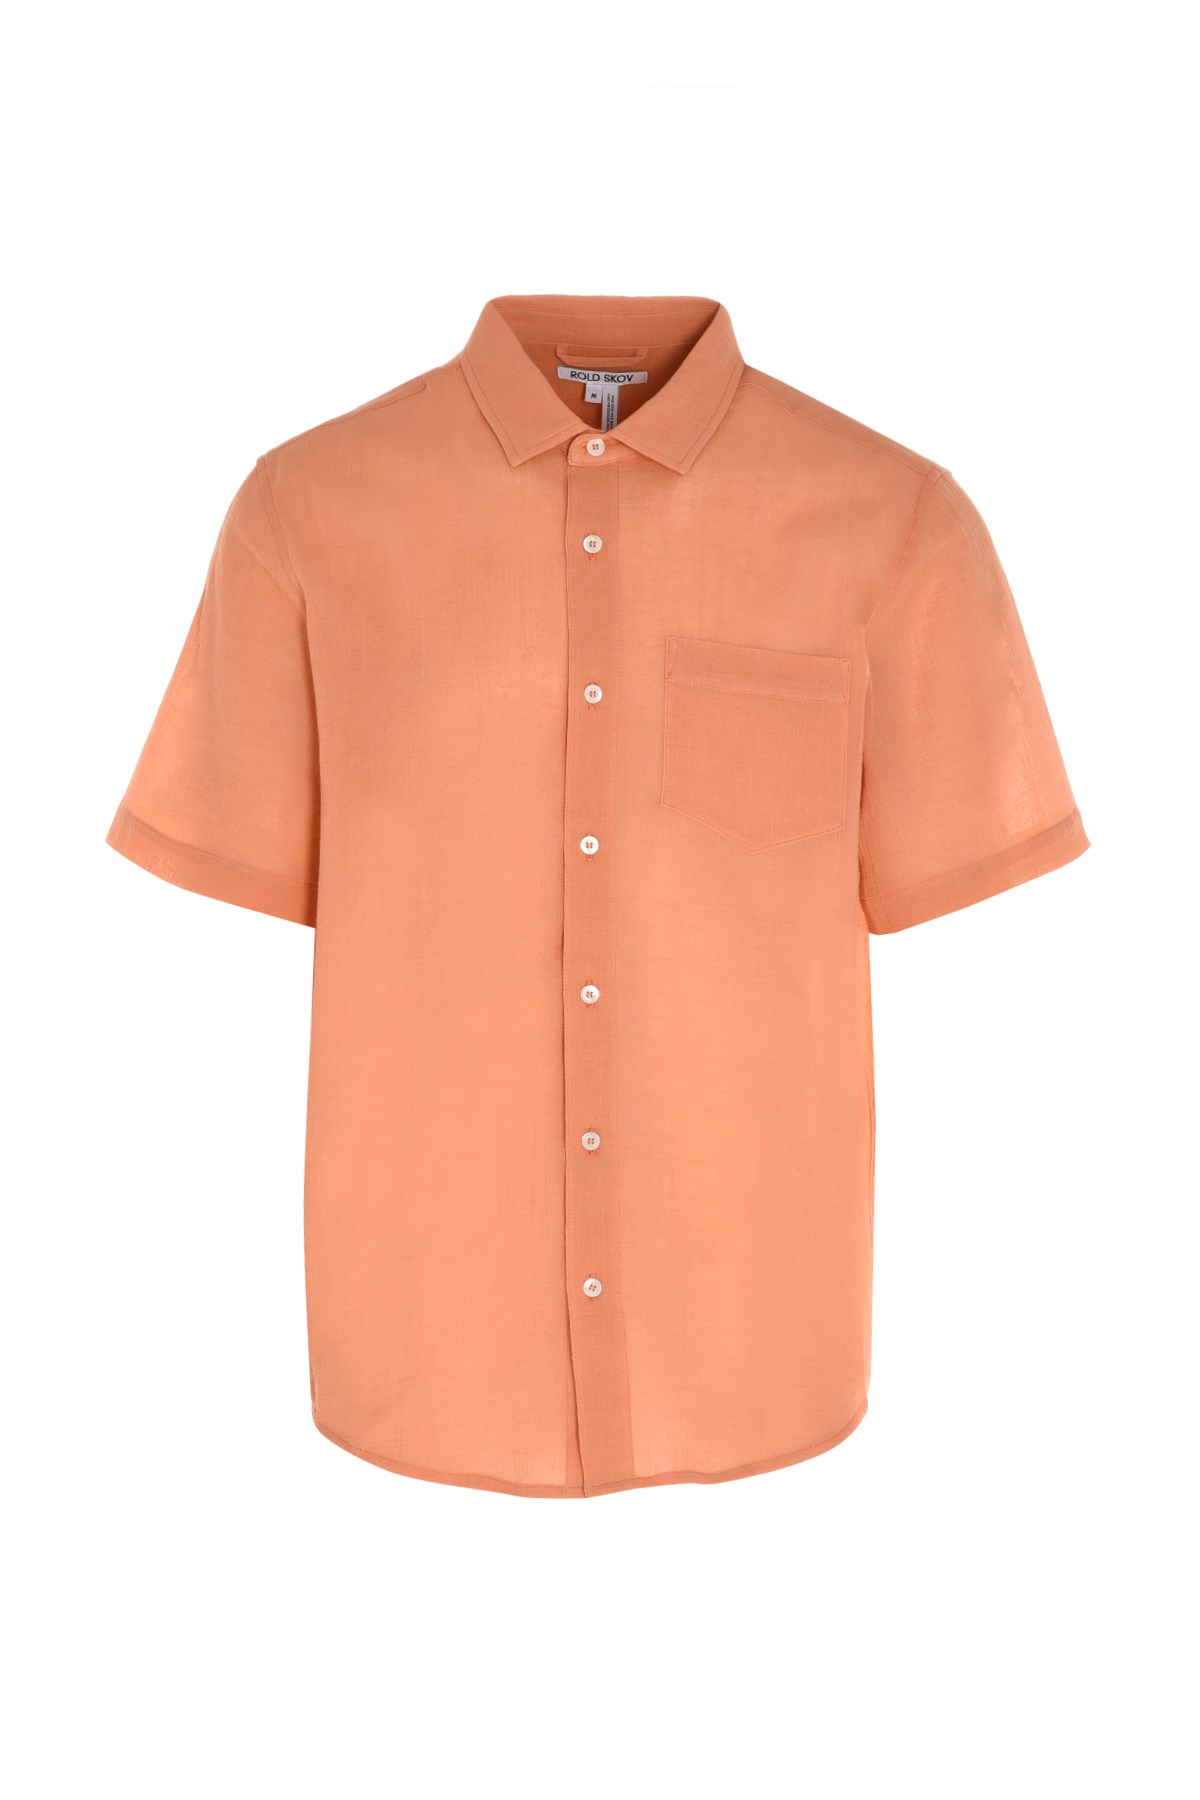 ROLD SKOV 'Fresh Shirt’ Shirt